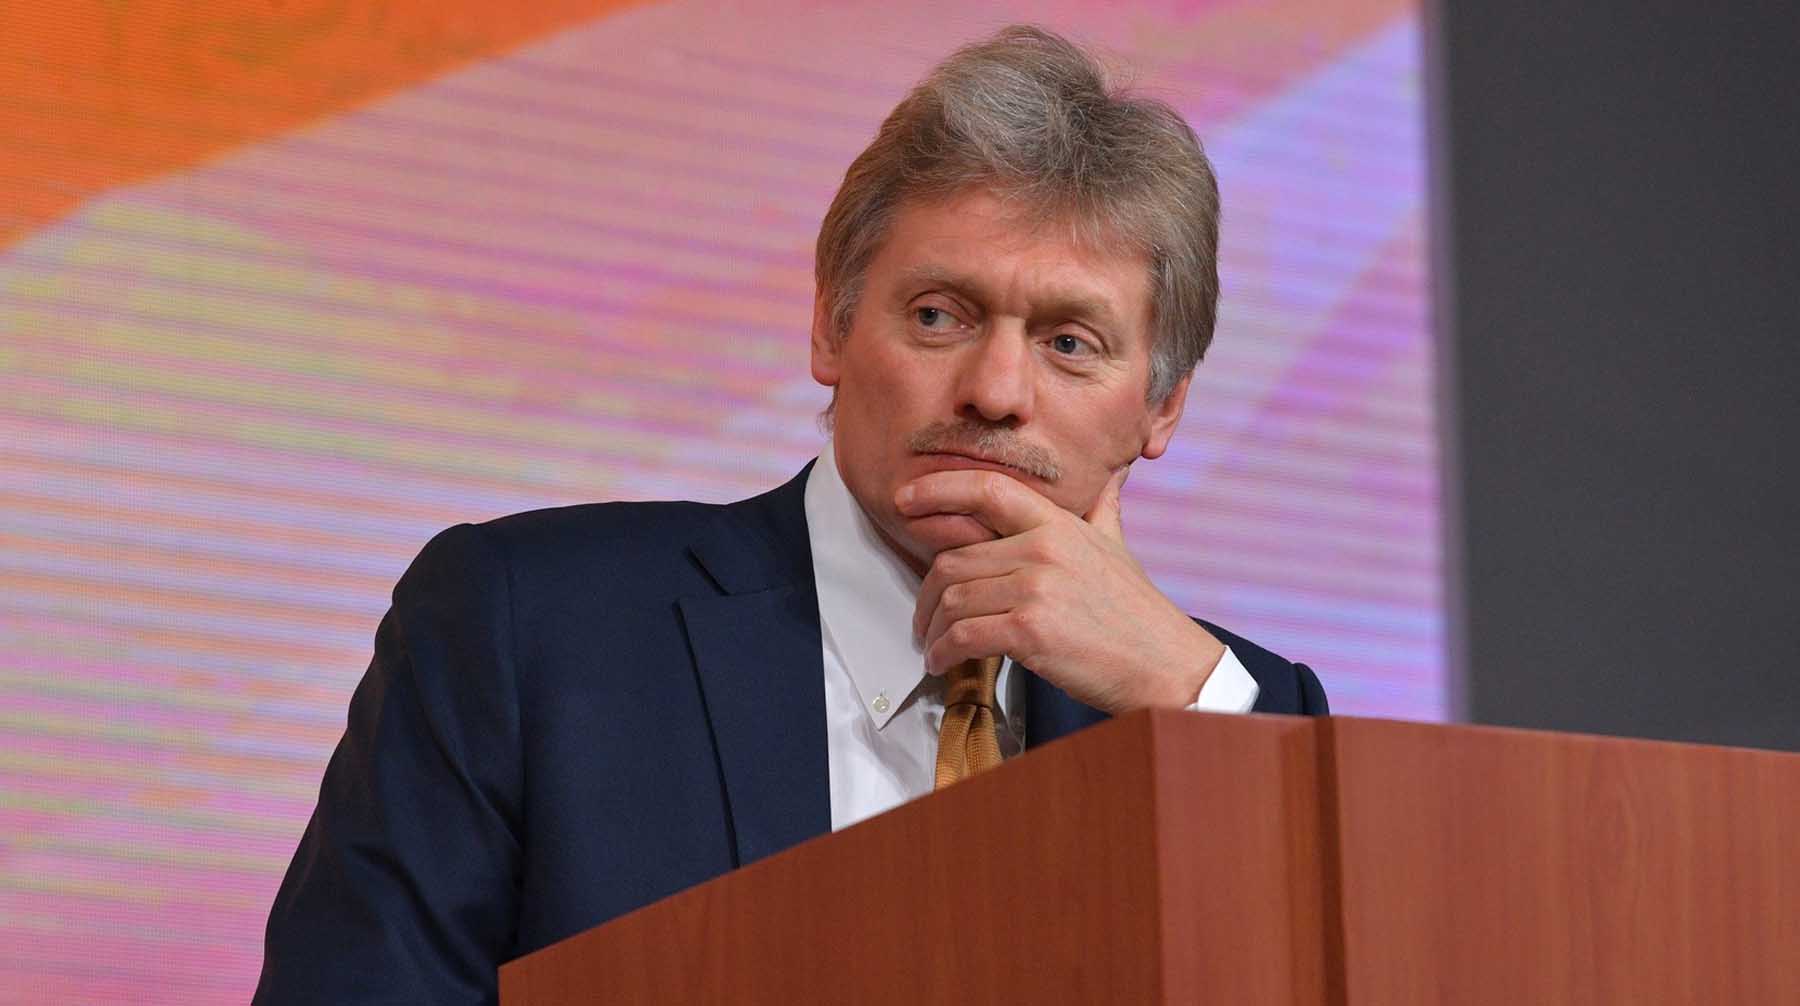 Пресс-секретарь Кремля подчеркнул, что президент ездит в командировки и у него каждый день проходят публичные мероприятия Фото: © Global Look Press / Kremlin Pool